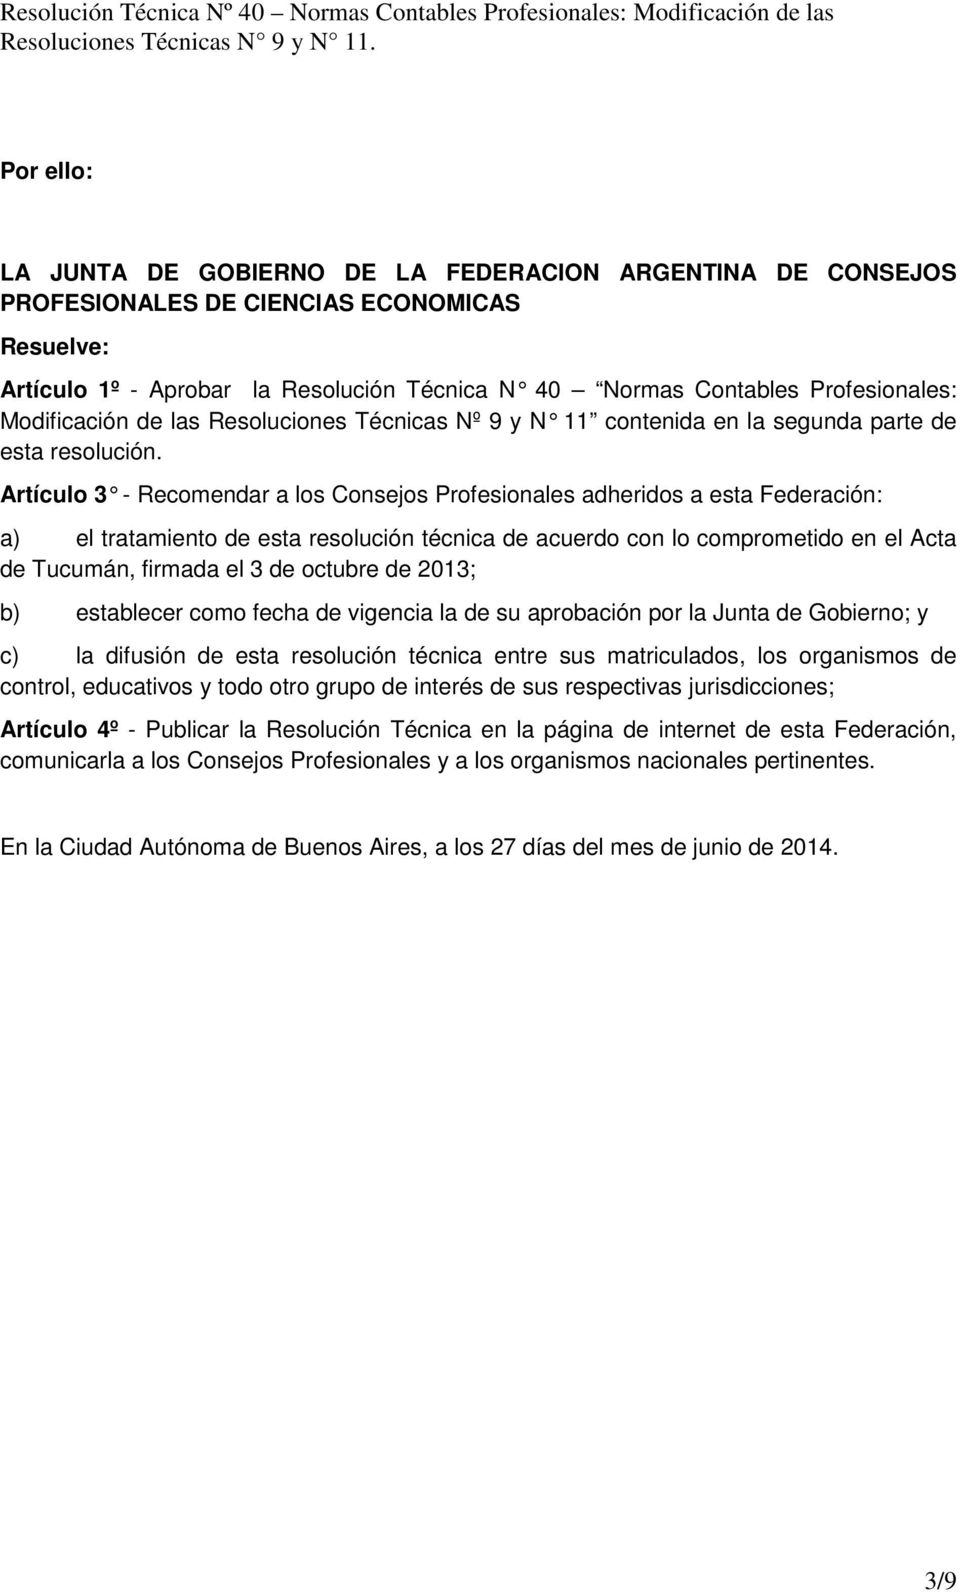 Artículo 3 - Recomendar a los Consejos Profesionales adheridos a esta Federación: a) el tratamiento de esta resolución técnica de acuerdo con lo comprometido en el Acta de Tucumán, firmada el 3 de